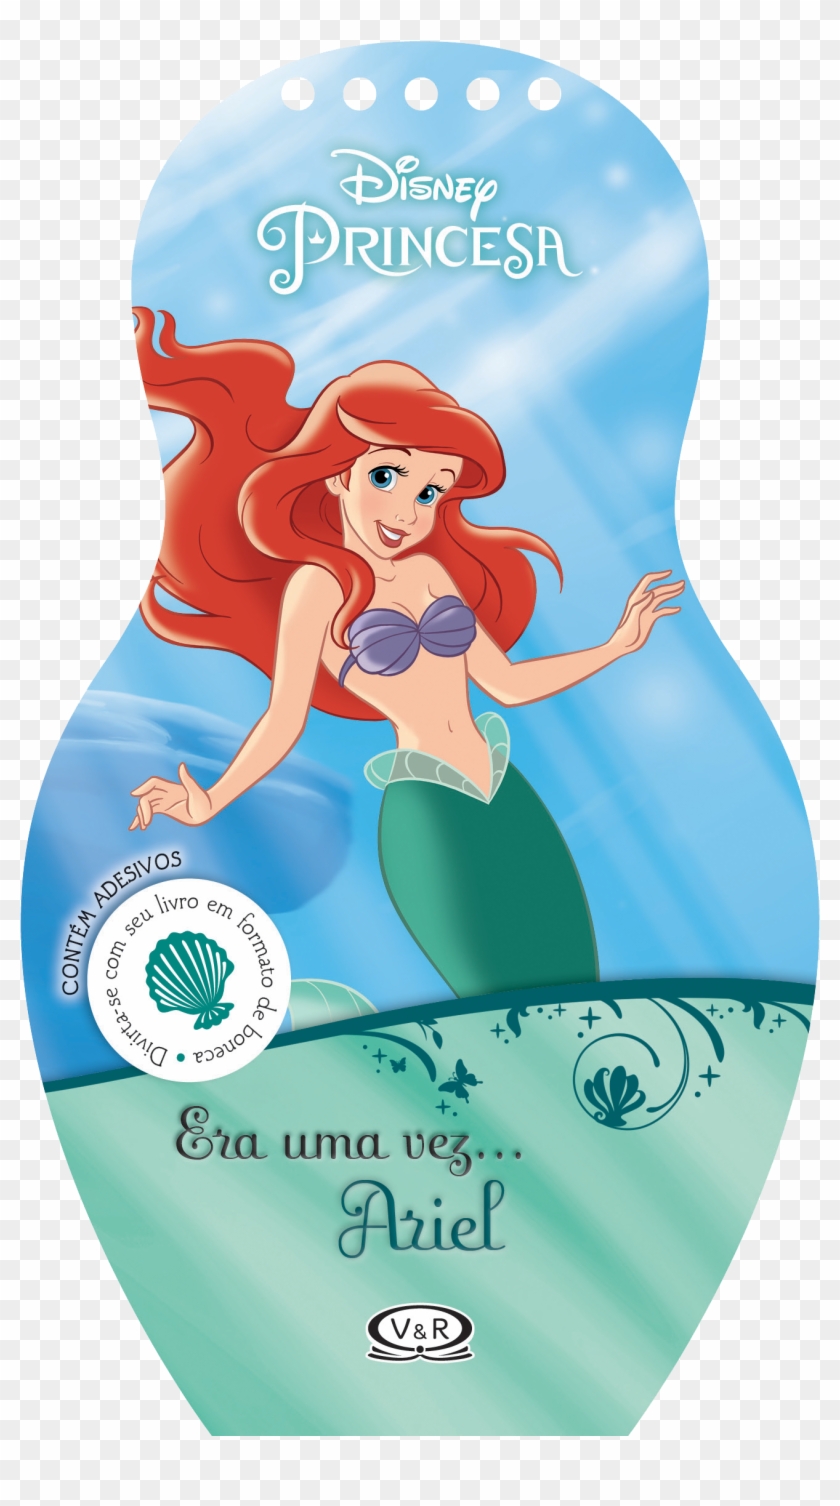 Capa Do Livro Era Uma Vez Ariel - Cartoon Clipart #202407